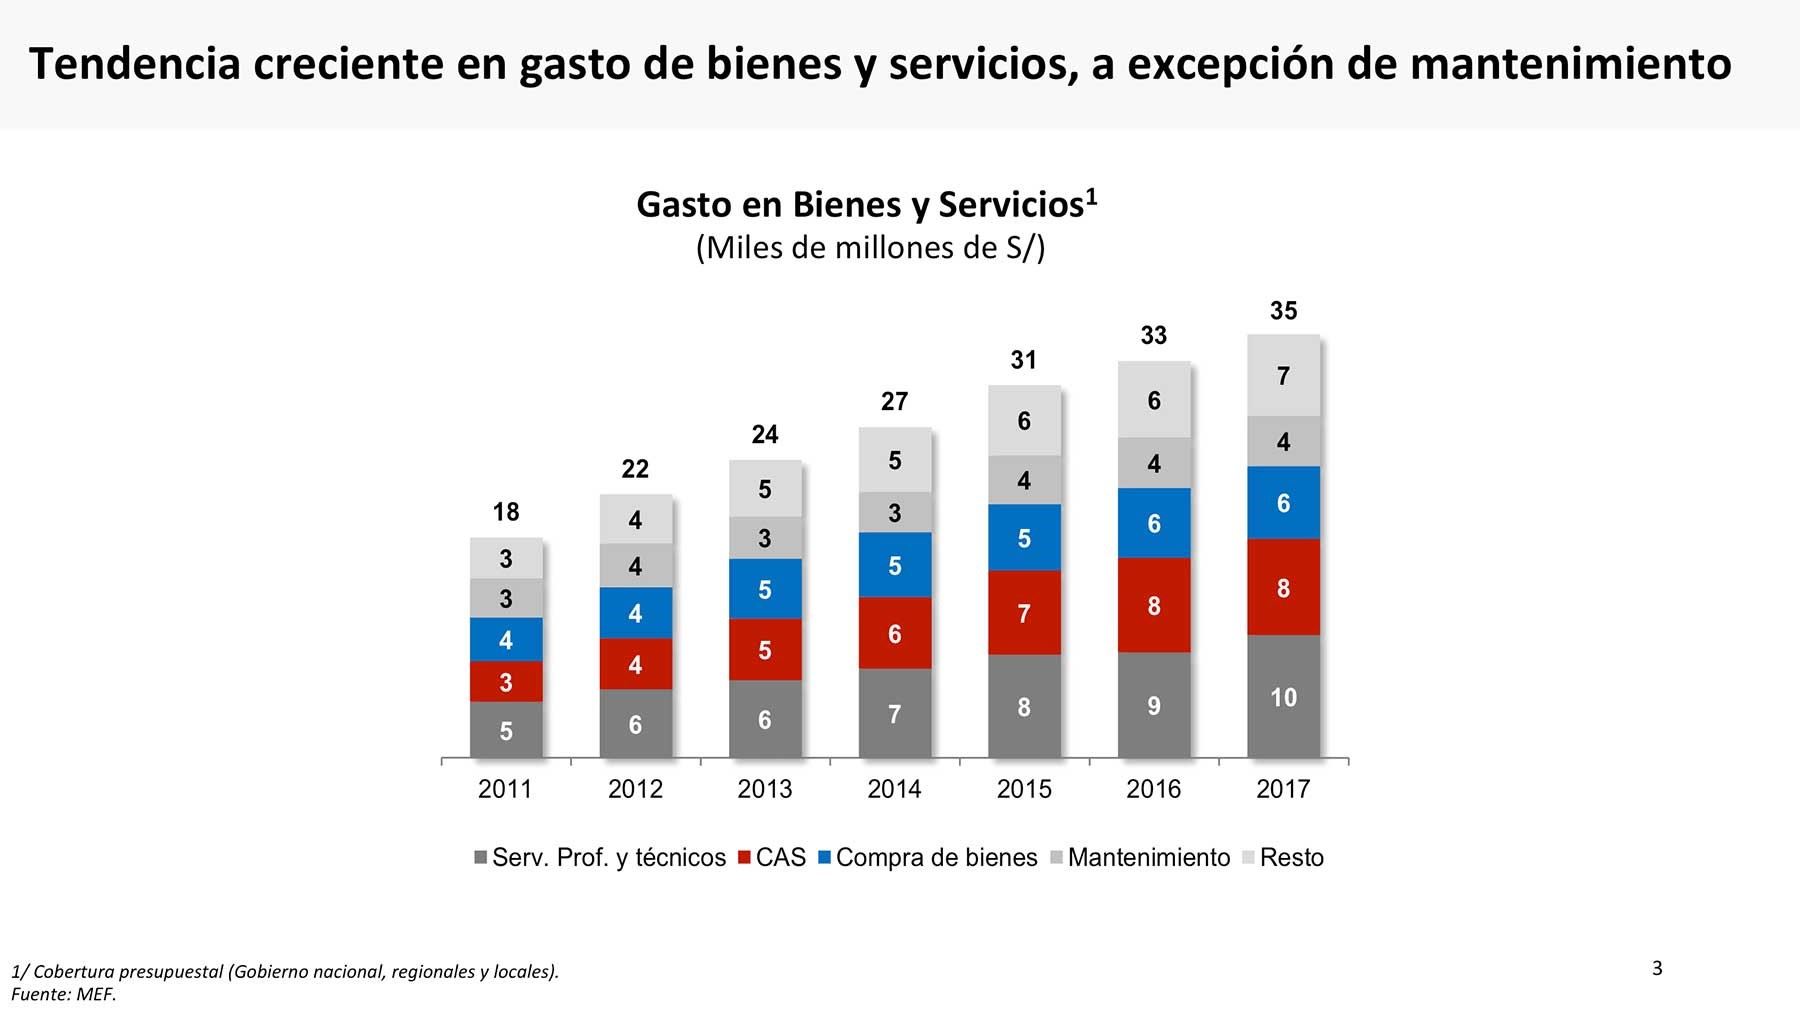 Los gastos de bienes y servicios registraron una tendencia creciente entre el 2011 y 2017.